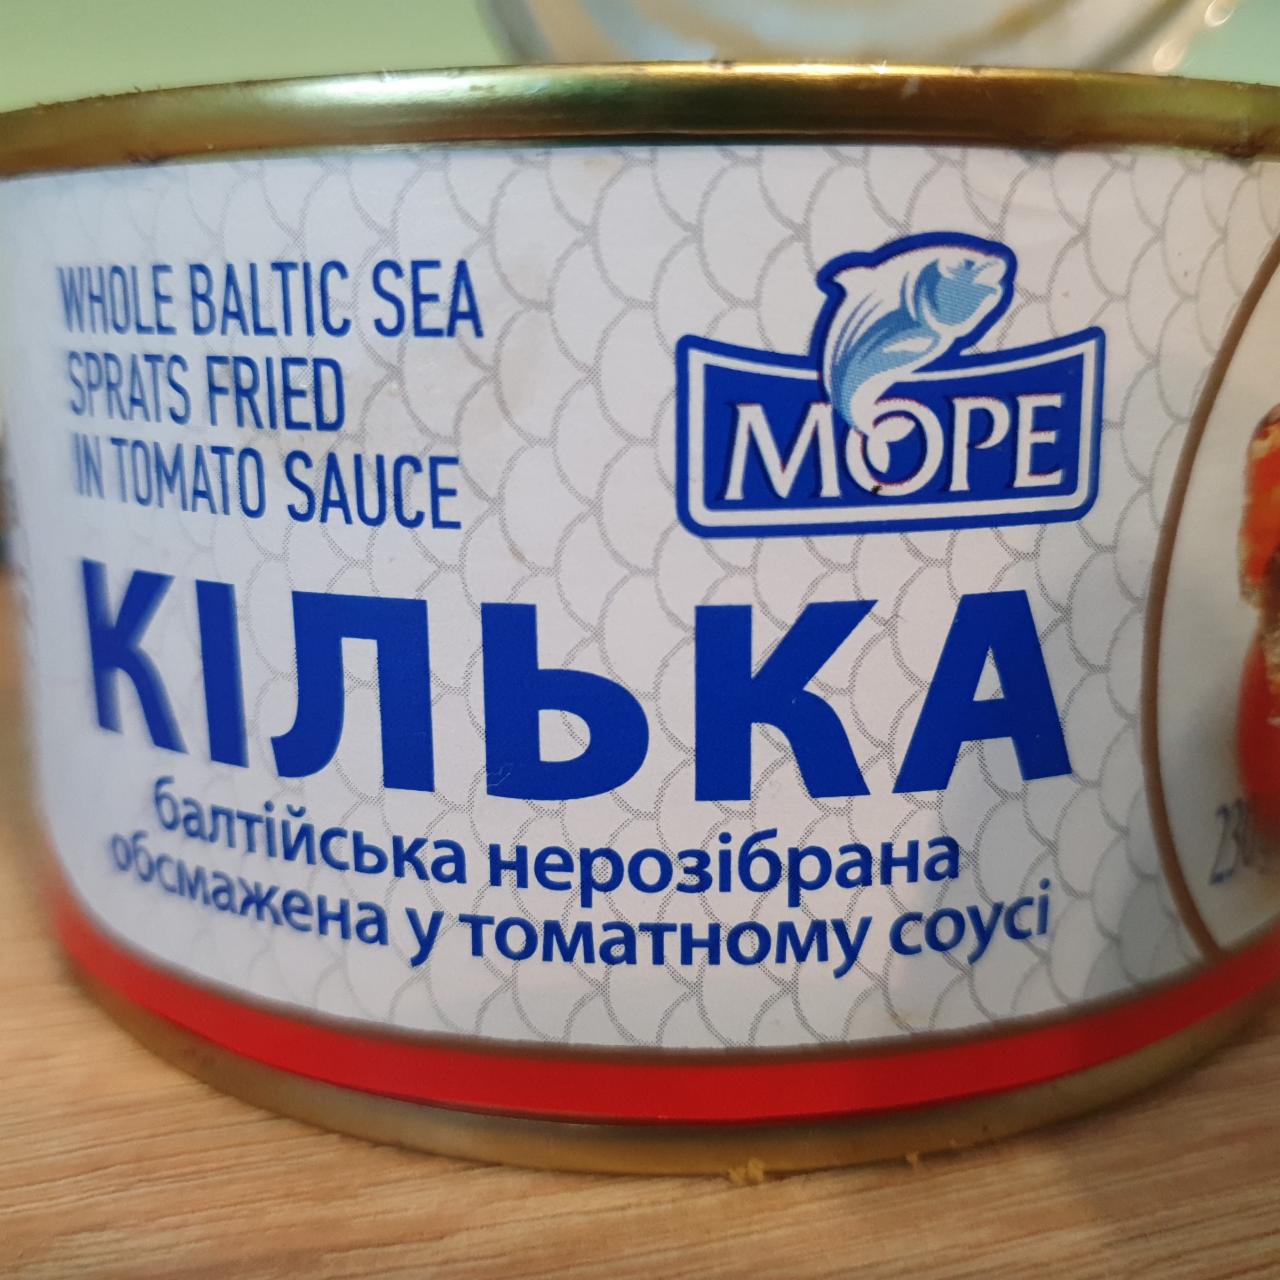 Фото - Килька балтийских неразобранная обжаренная в томатном соусе Море